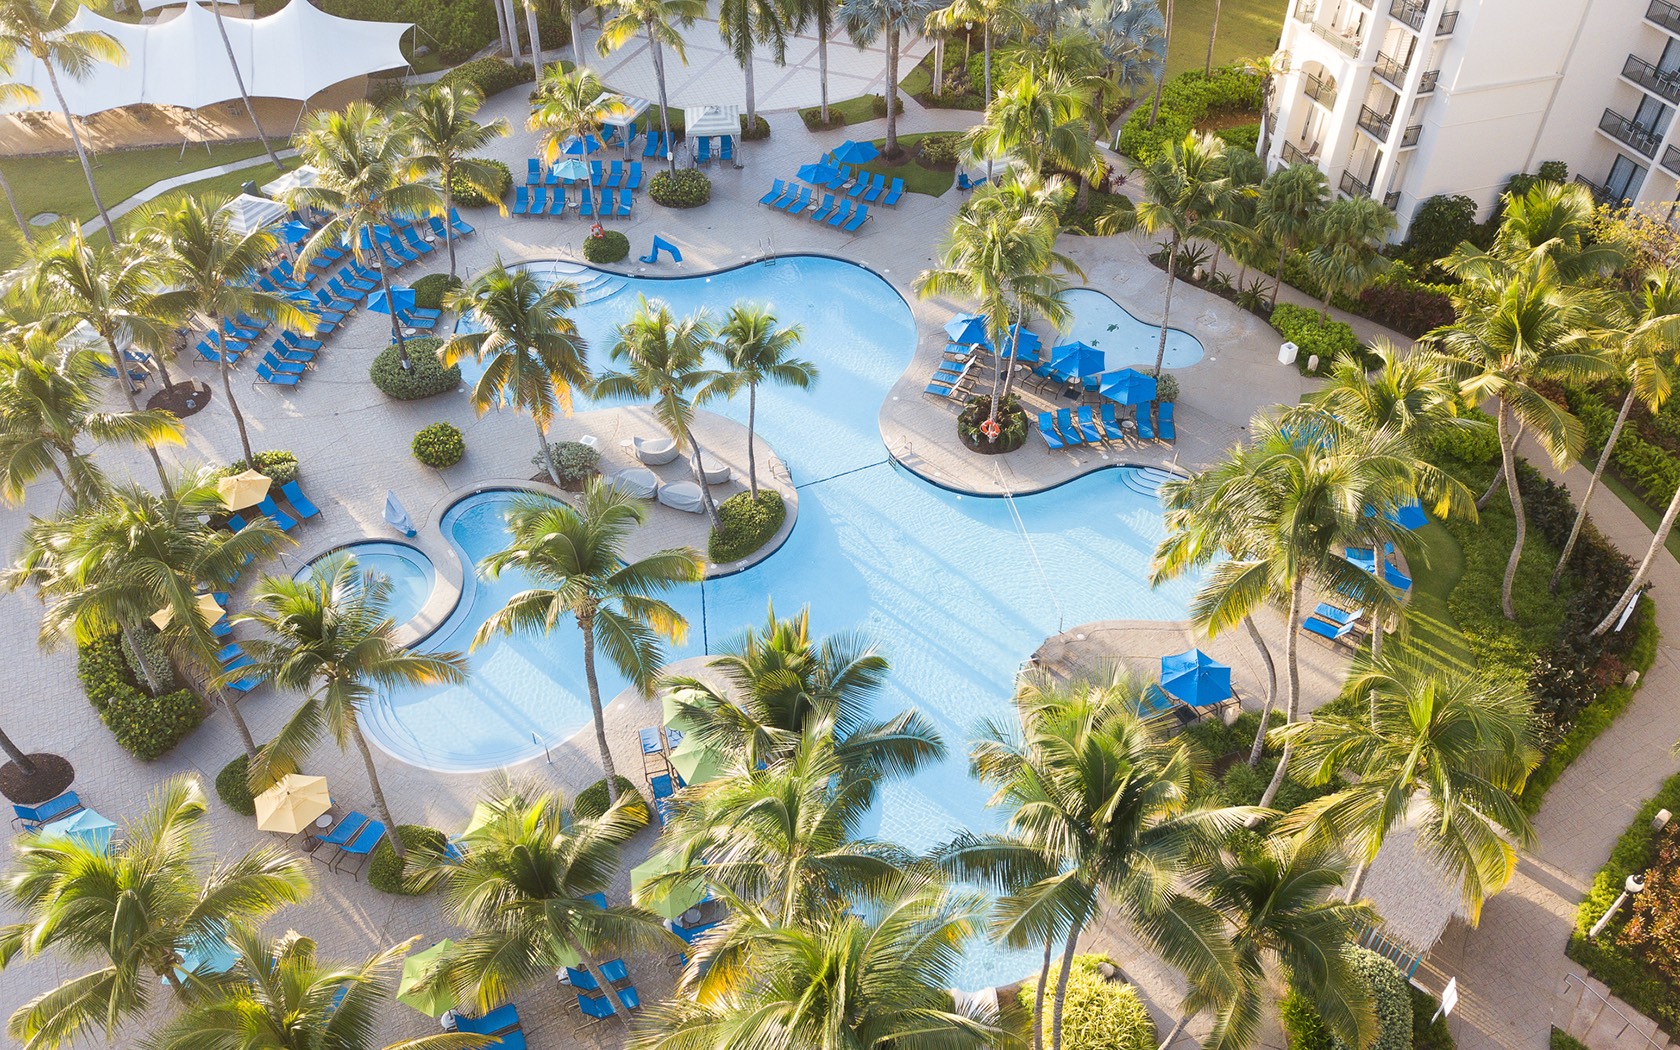 Rio Mar Beach Resort & Spa, A Wyndham Grand Resort